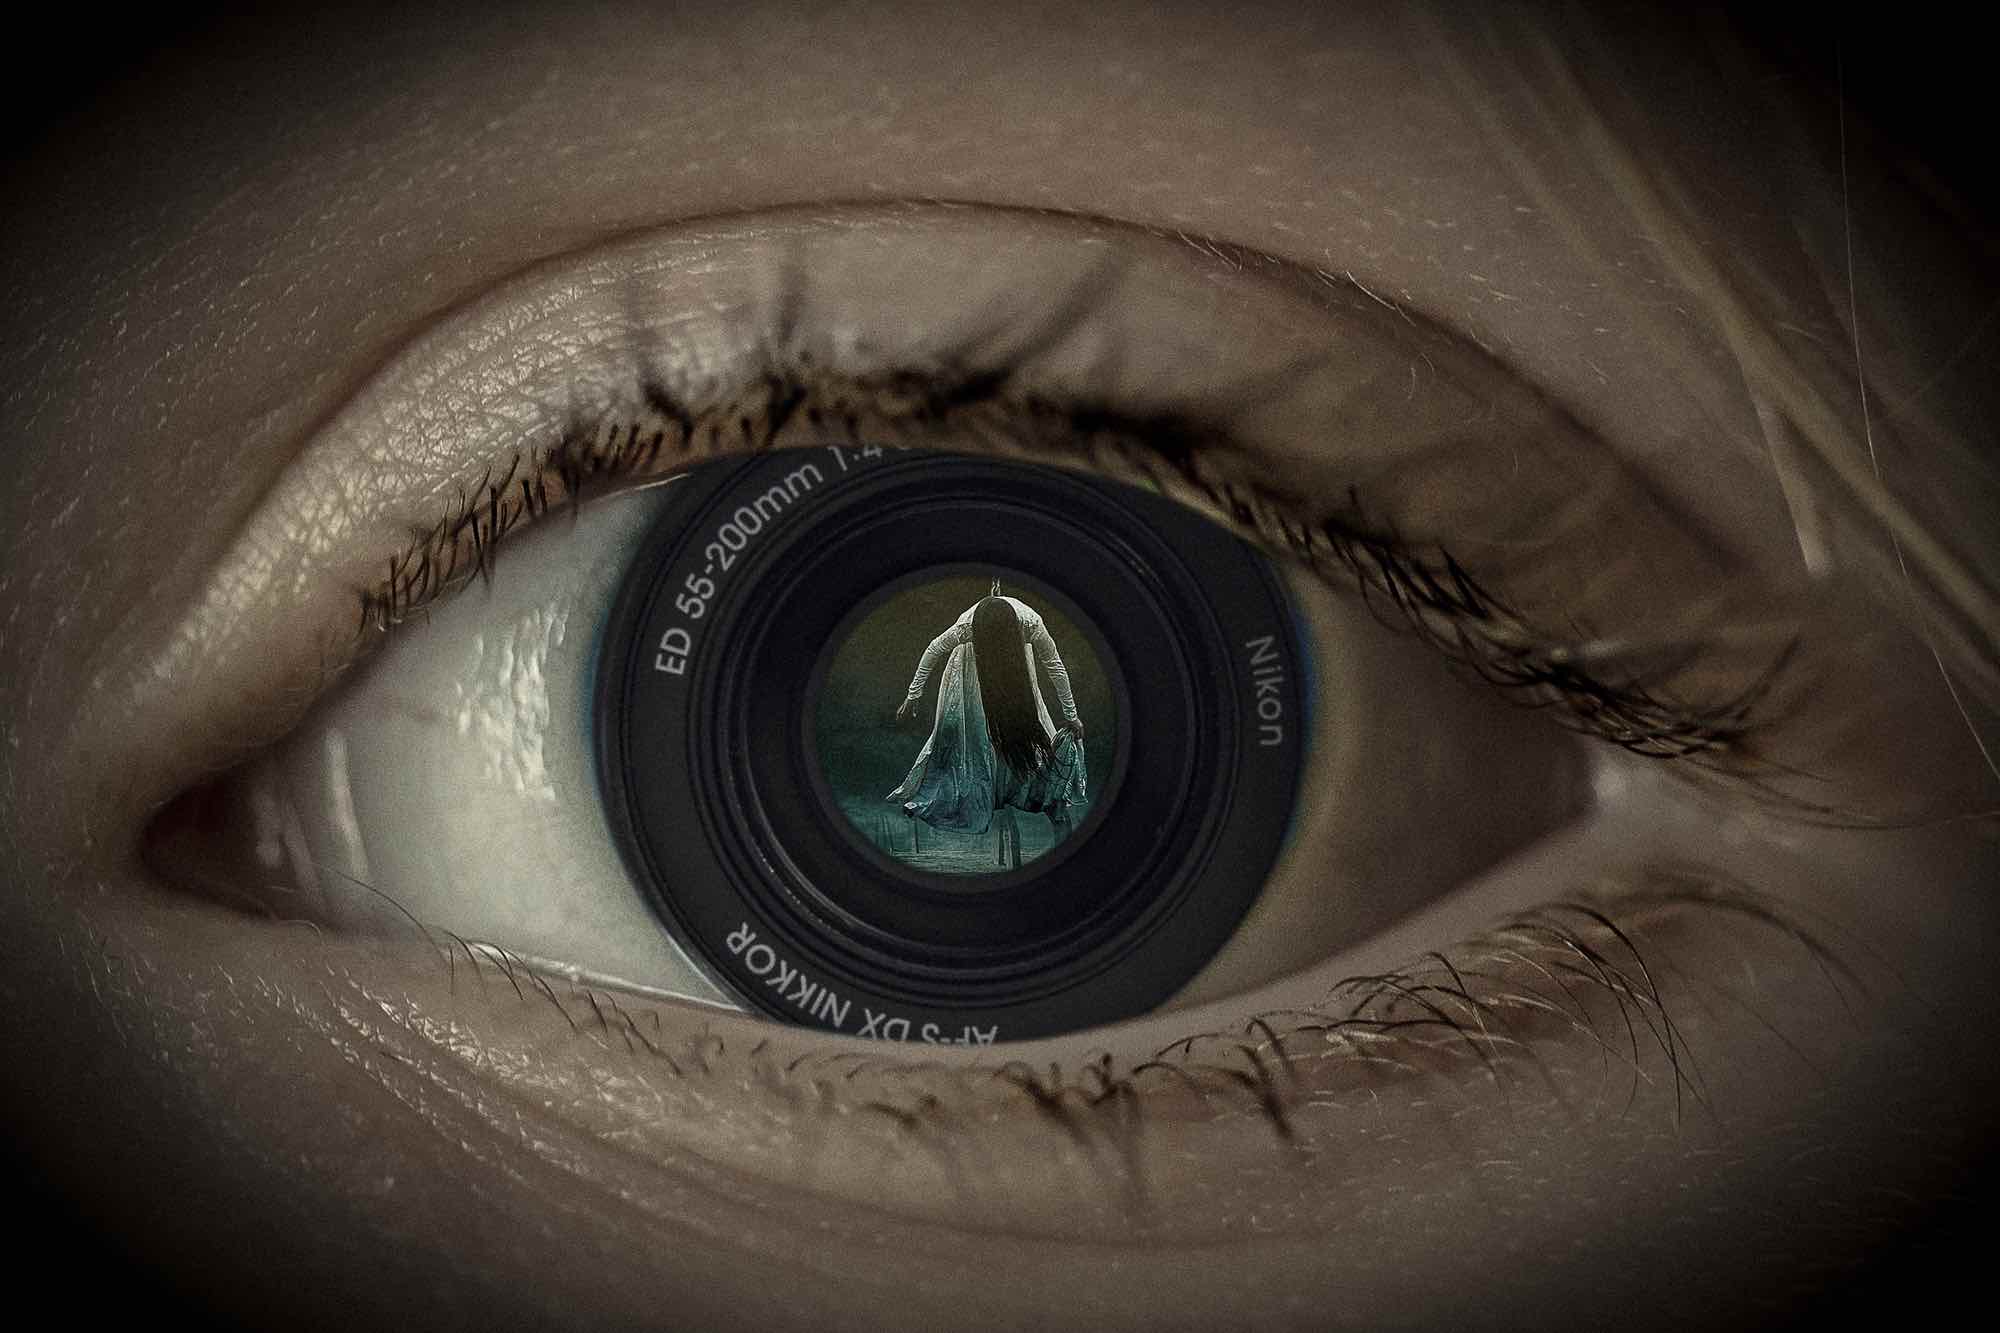 Bild: Auge mit Überwachungskamera als Iris